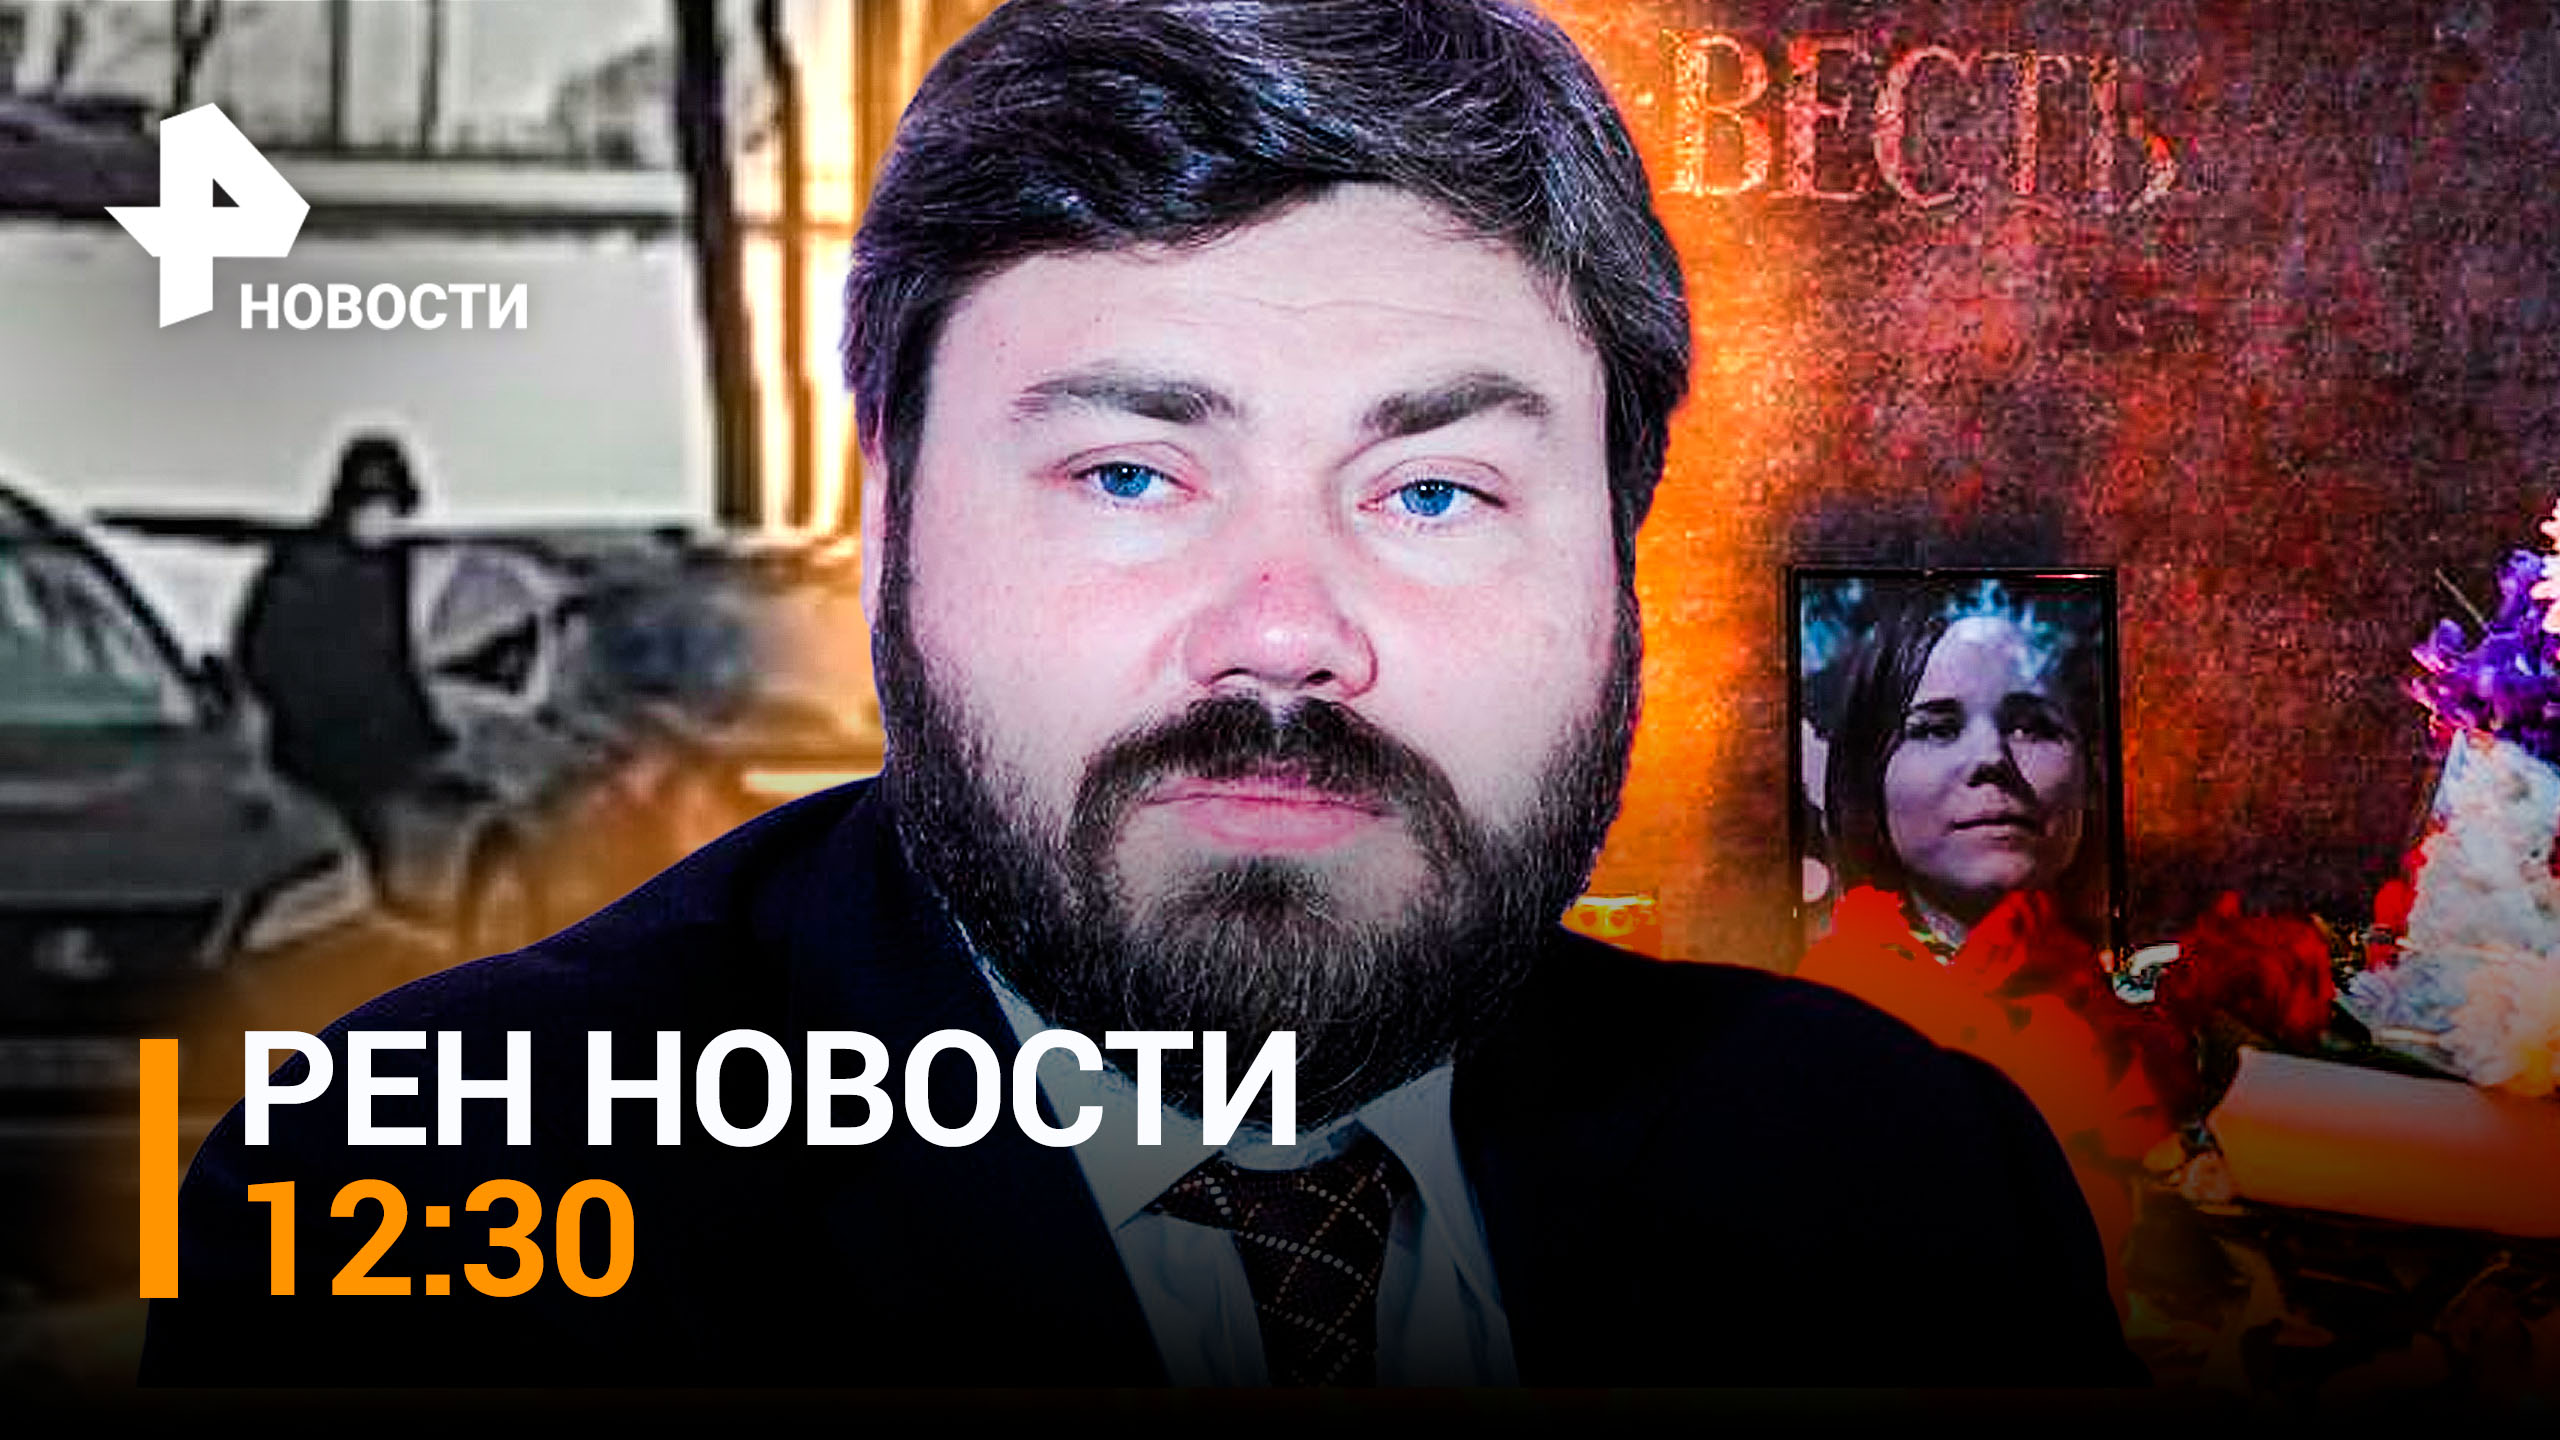 Повторить сценарий убийства Дугиной не удалось: ФСБ предотвратила теракт / РЕН Новости 12:30 от 6.03